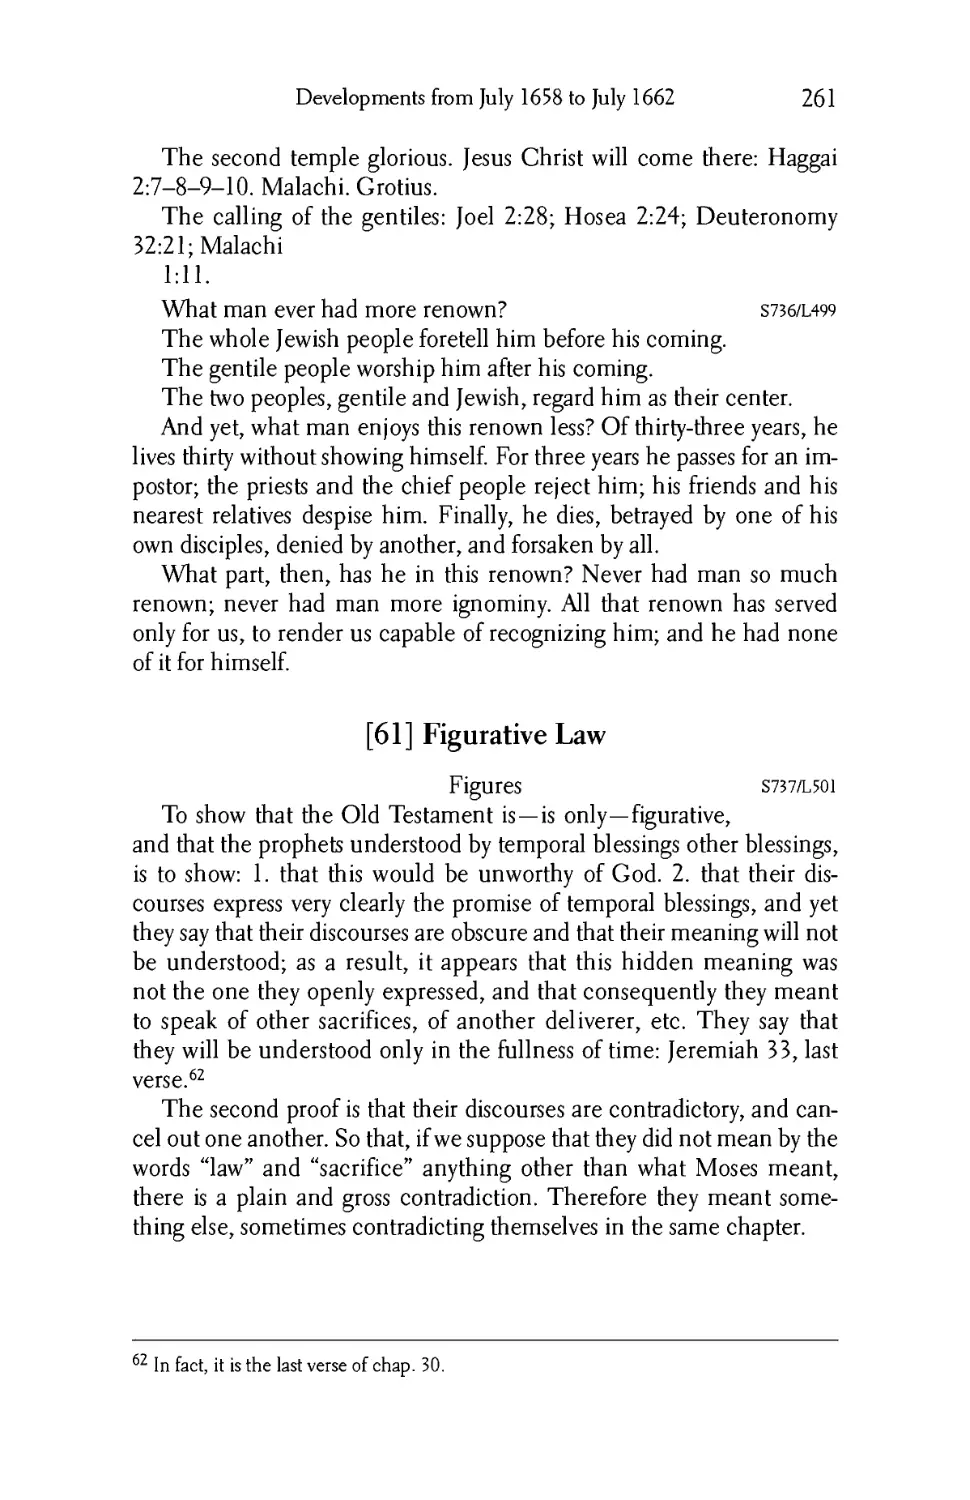 61. Figurative Law